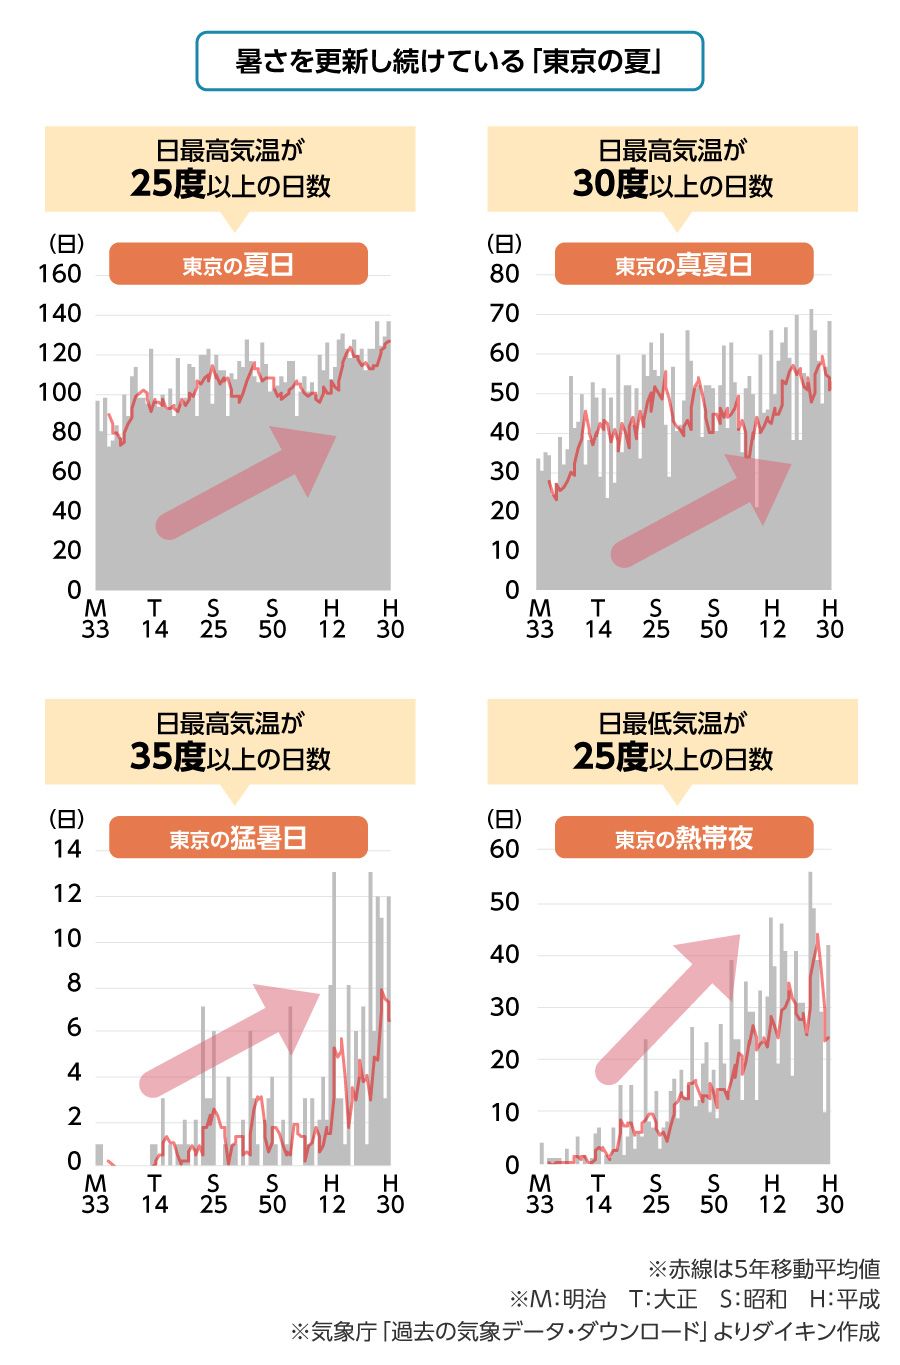 令和の東京が昭和より 夏が50日も長い 理由 ダイキン工業 空気で答えを出す会社 東洋経済オンライン 社会をよくする経済ニュース